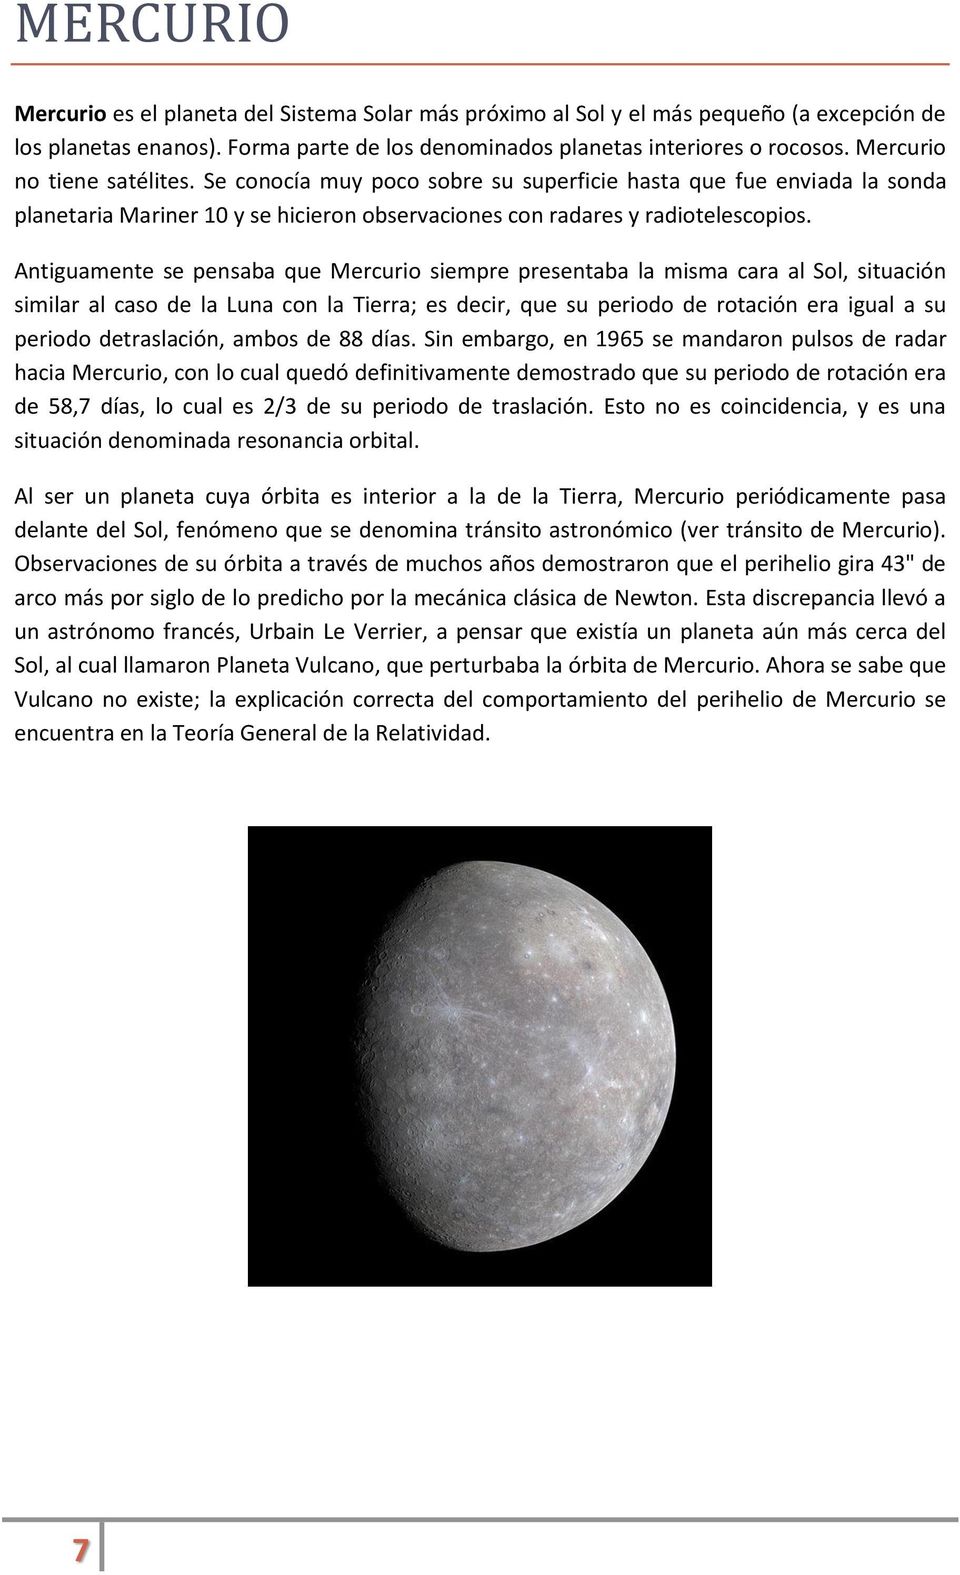 Antiguamente se pensaba que Mercurio siempre presentaba la misma cara al Sol, situación similar al caso de la Luna con la Tierra; es decir, que su periodo de rotación era igual a su periodo